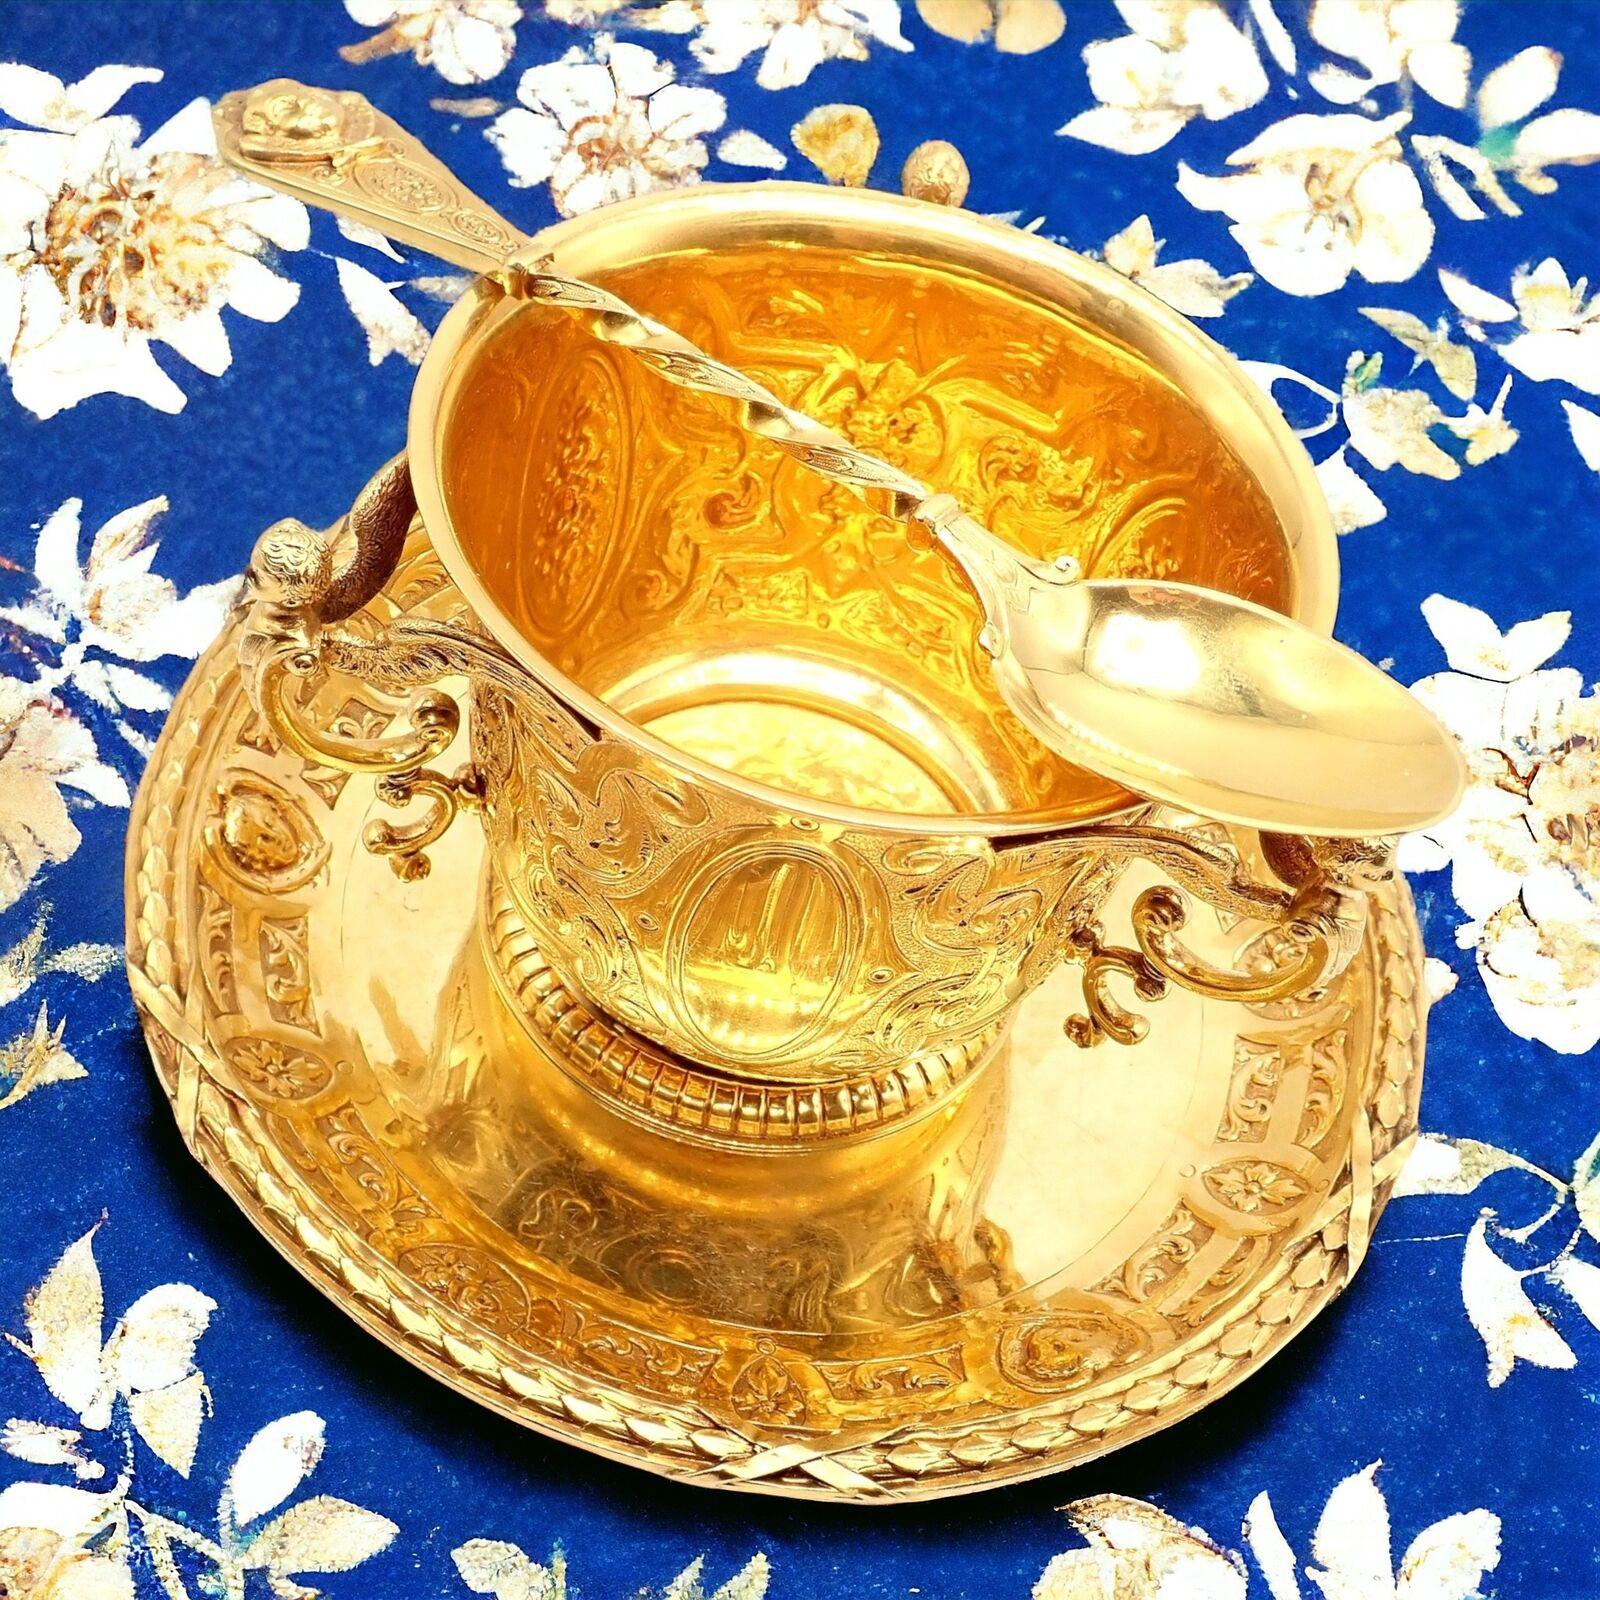 Ensemble en or jaune massif 18k de sucriers, d'assiettes et de cuillères antiques par Abraham Portales vers 1779.
Le sucrier, le bol et la cuillère d'Abraham Portales, datant du XVIIIe siècle et fabriqués en or 18 carats, constituent un exemple